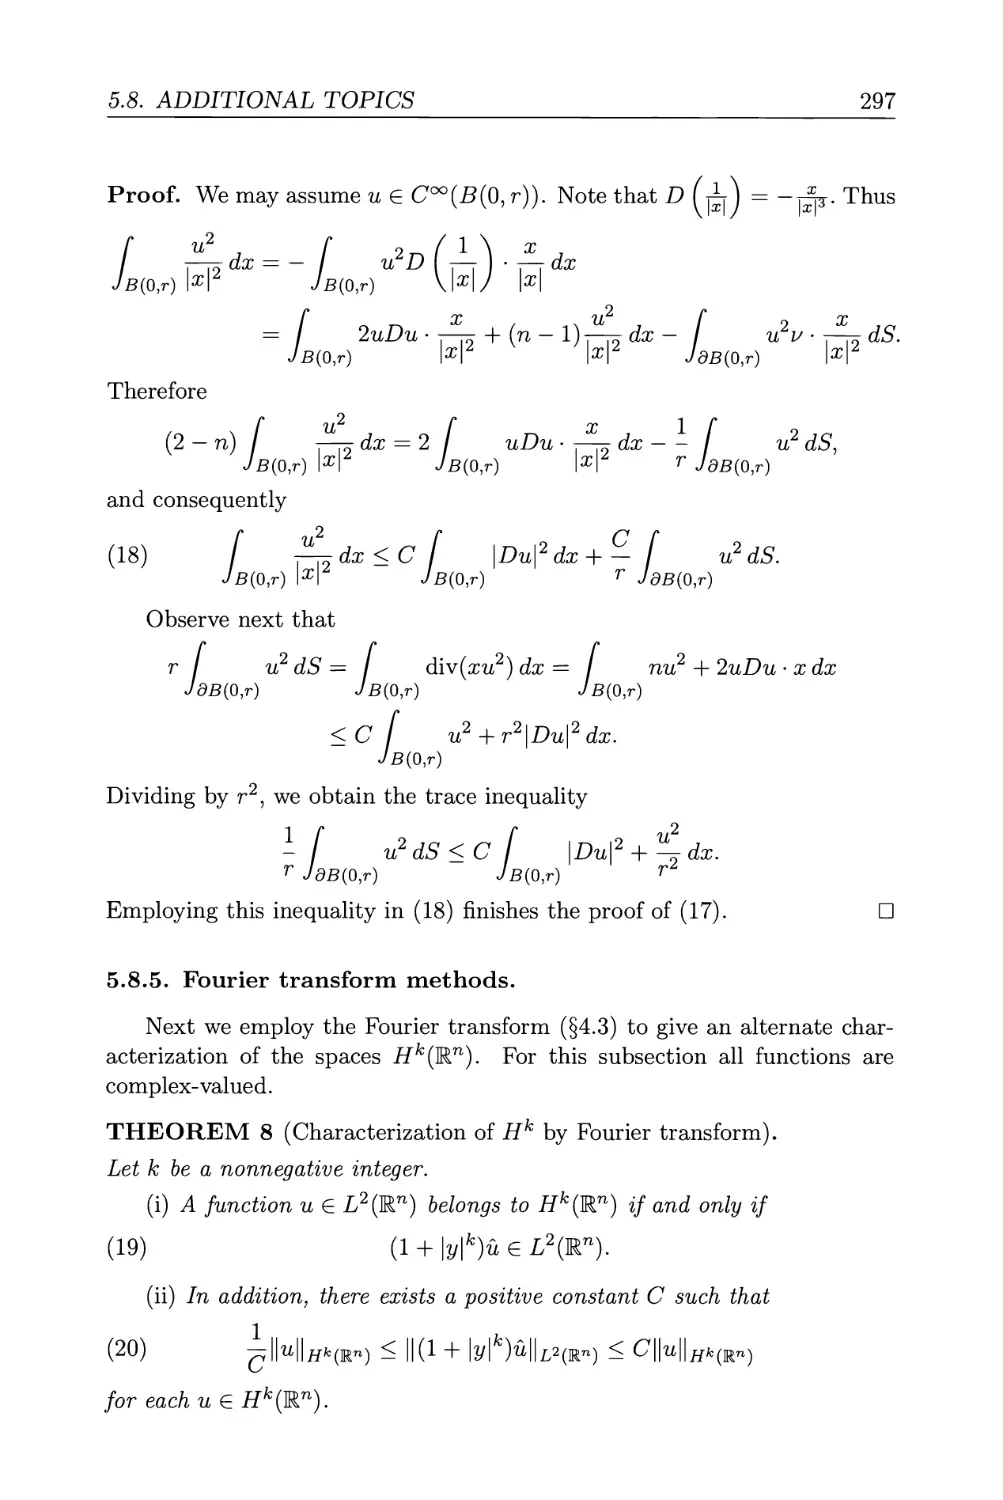 5.8.5. Fourier transform methods